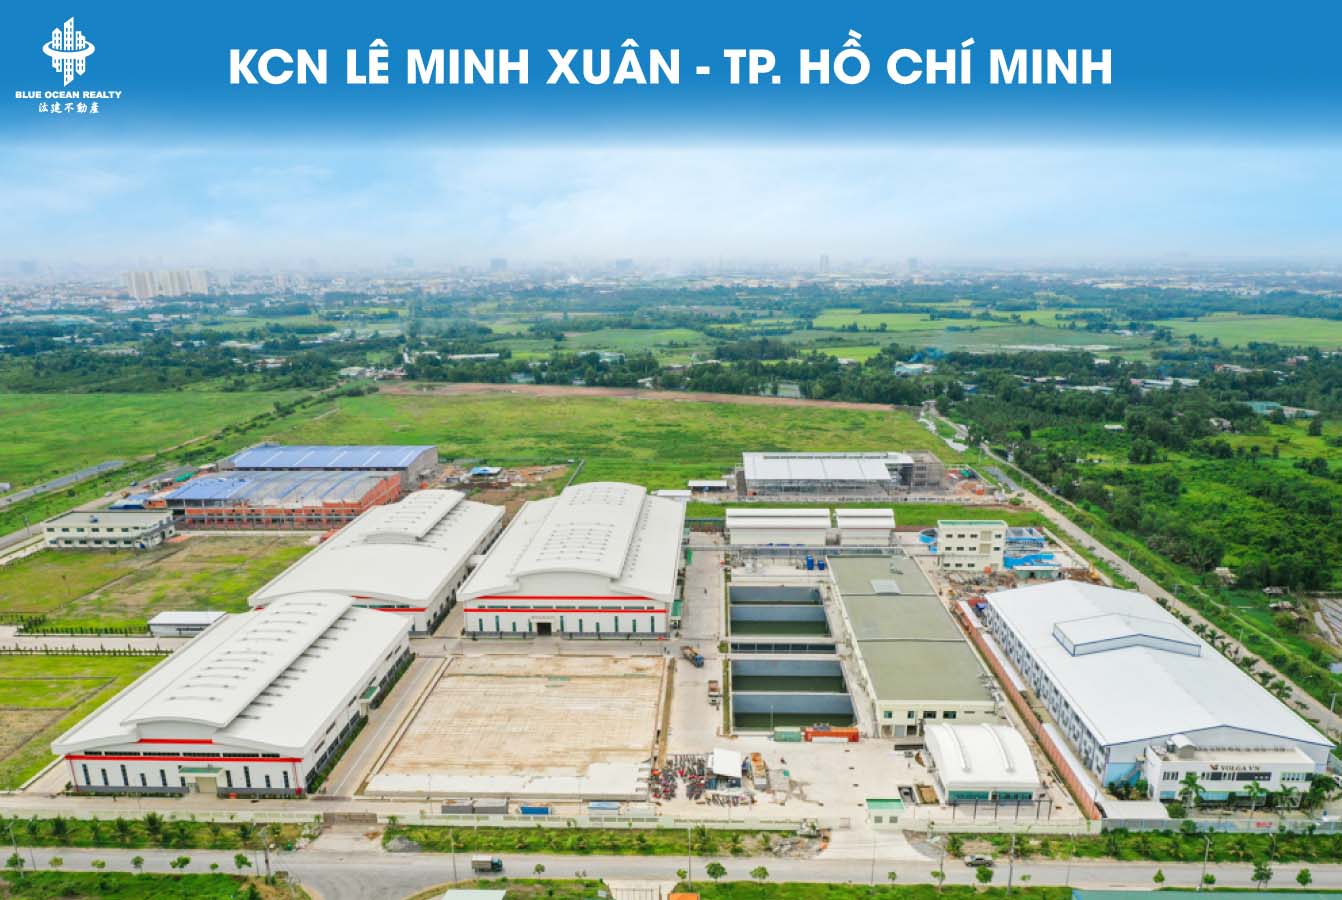 Khu công nghiệp Lê Minh Xuân – TP HCM